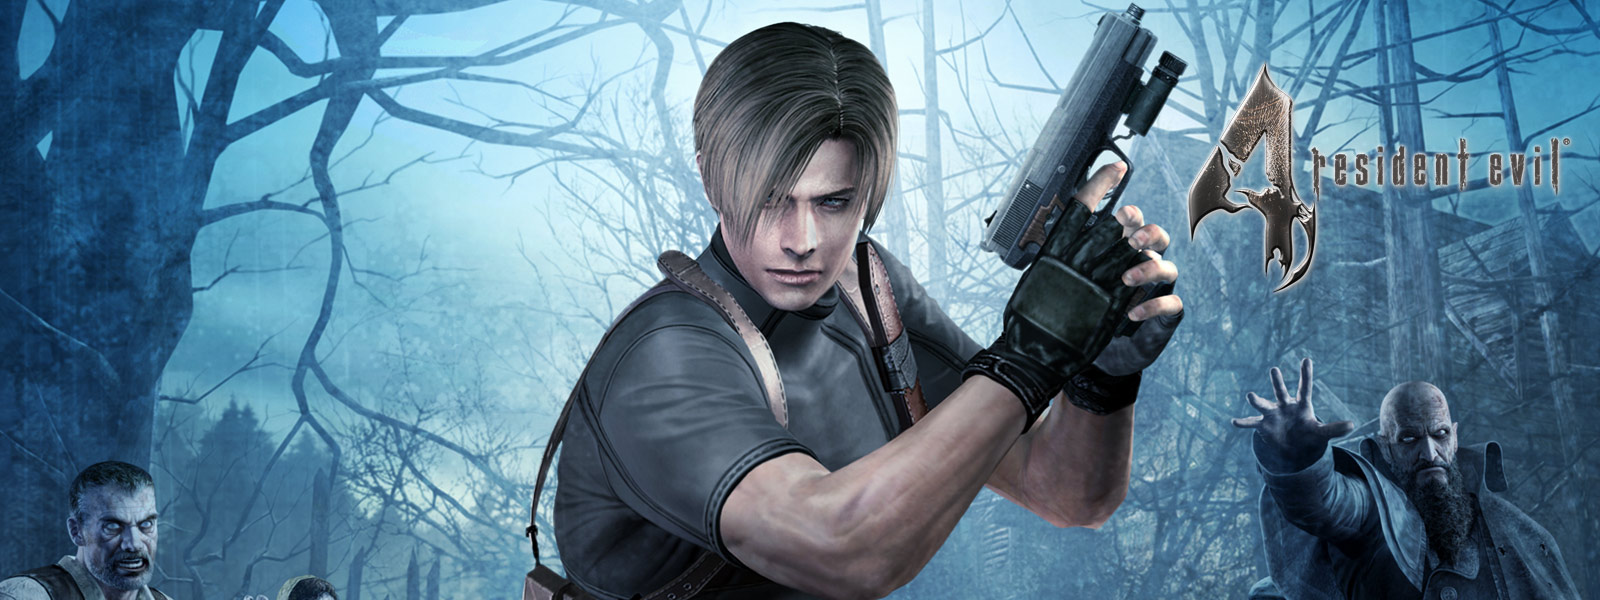 Resident Evil 4, persoon met een pistool in een donker woud omsingeld door zombies